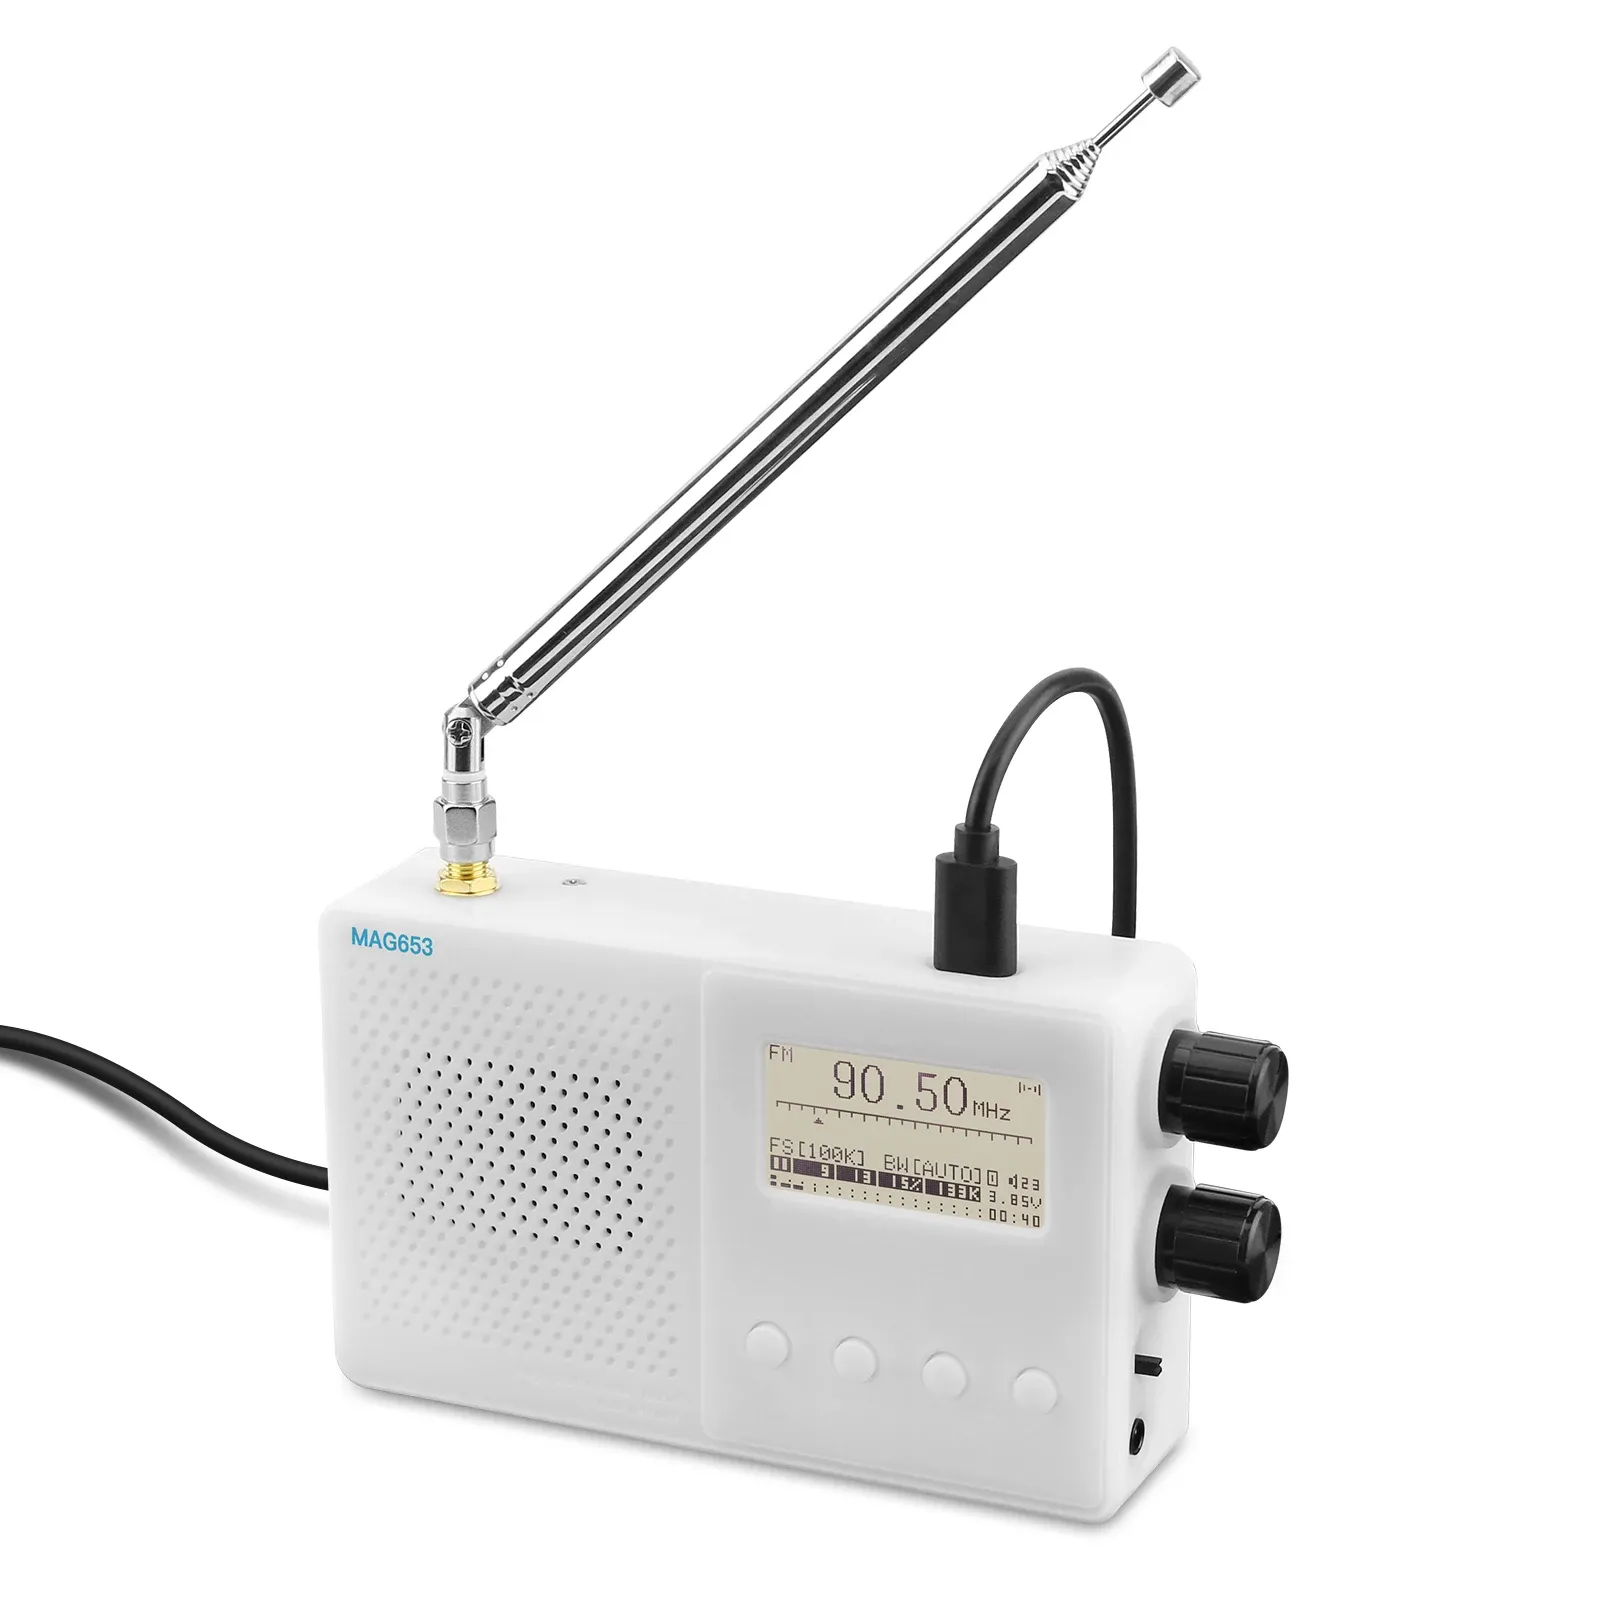 Rádio Hamgeek portátil Tef6686 Mini Rádio FM/LW/MW/SW Receptor de rádio com tela de 1,8 polegada com tela de 1,8 polegada